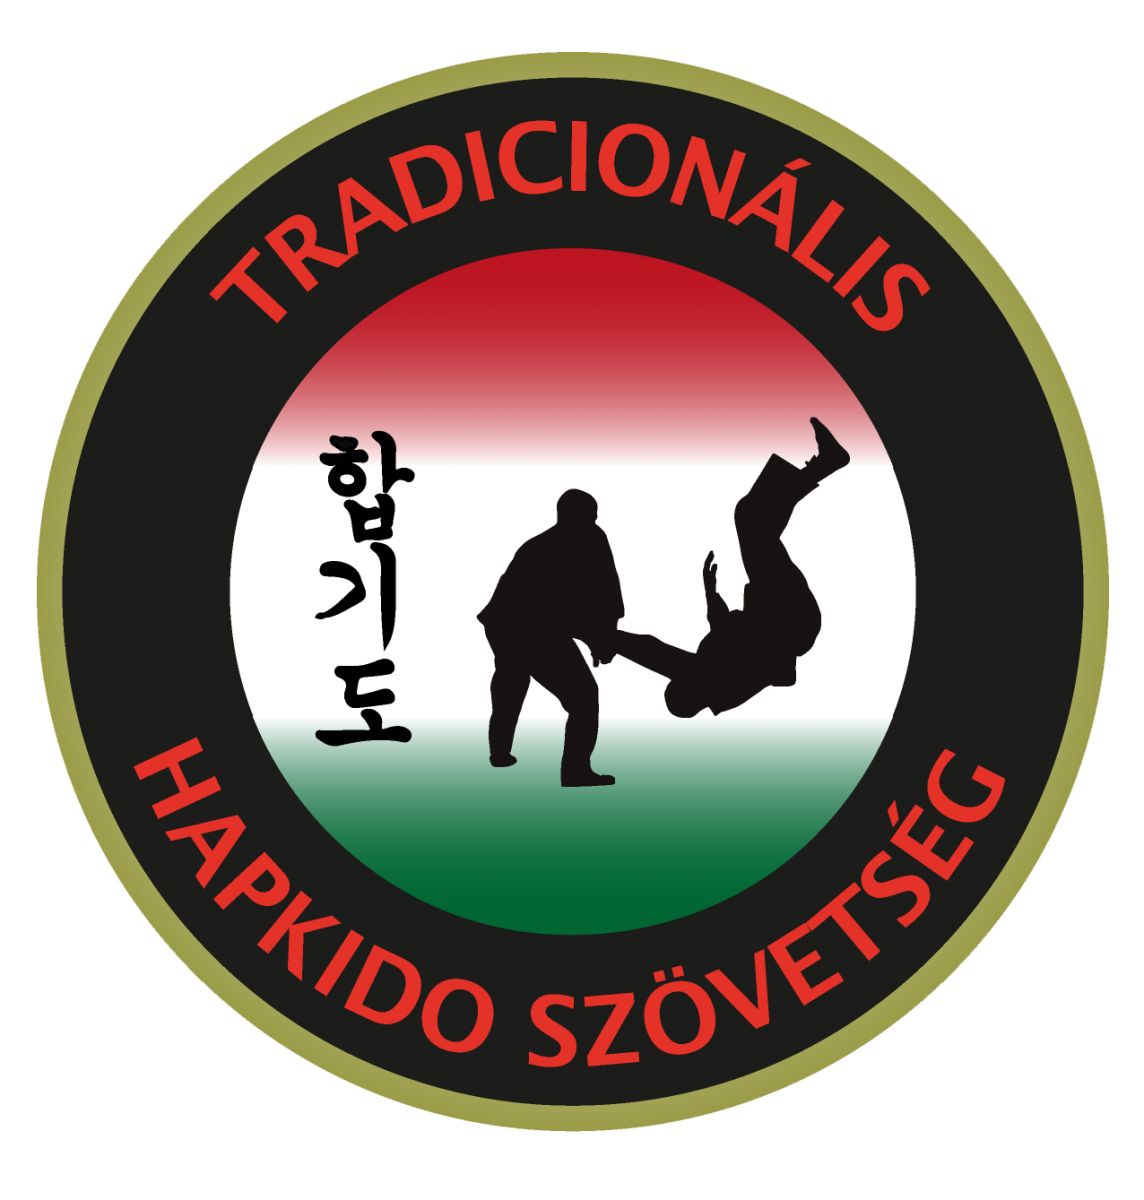 Traidicionális Hapkido Szövetség